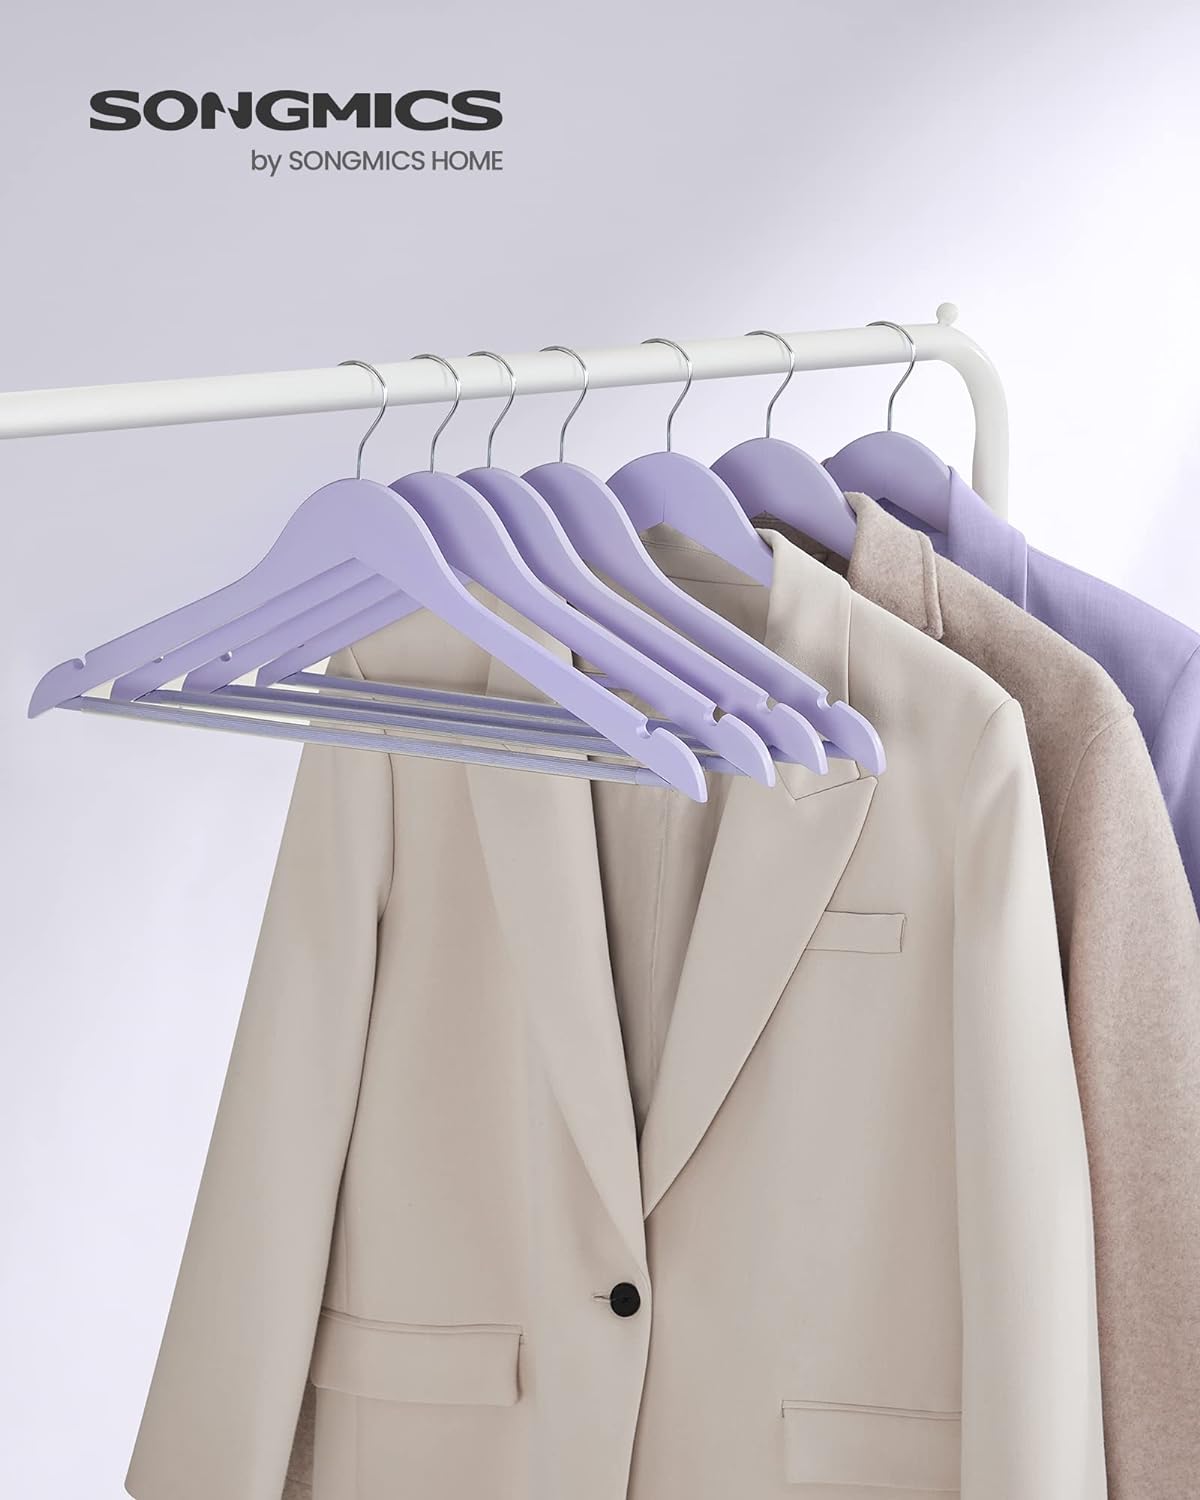 Clothes Hanger, Wooden Hanger, Coat Hanger, Solid Wood Hangers, Notches in the Shoulder Area, Purple/ Silver, SONGMICS, 9